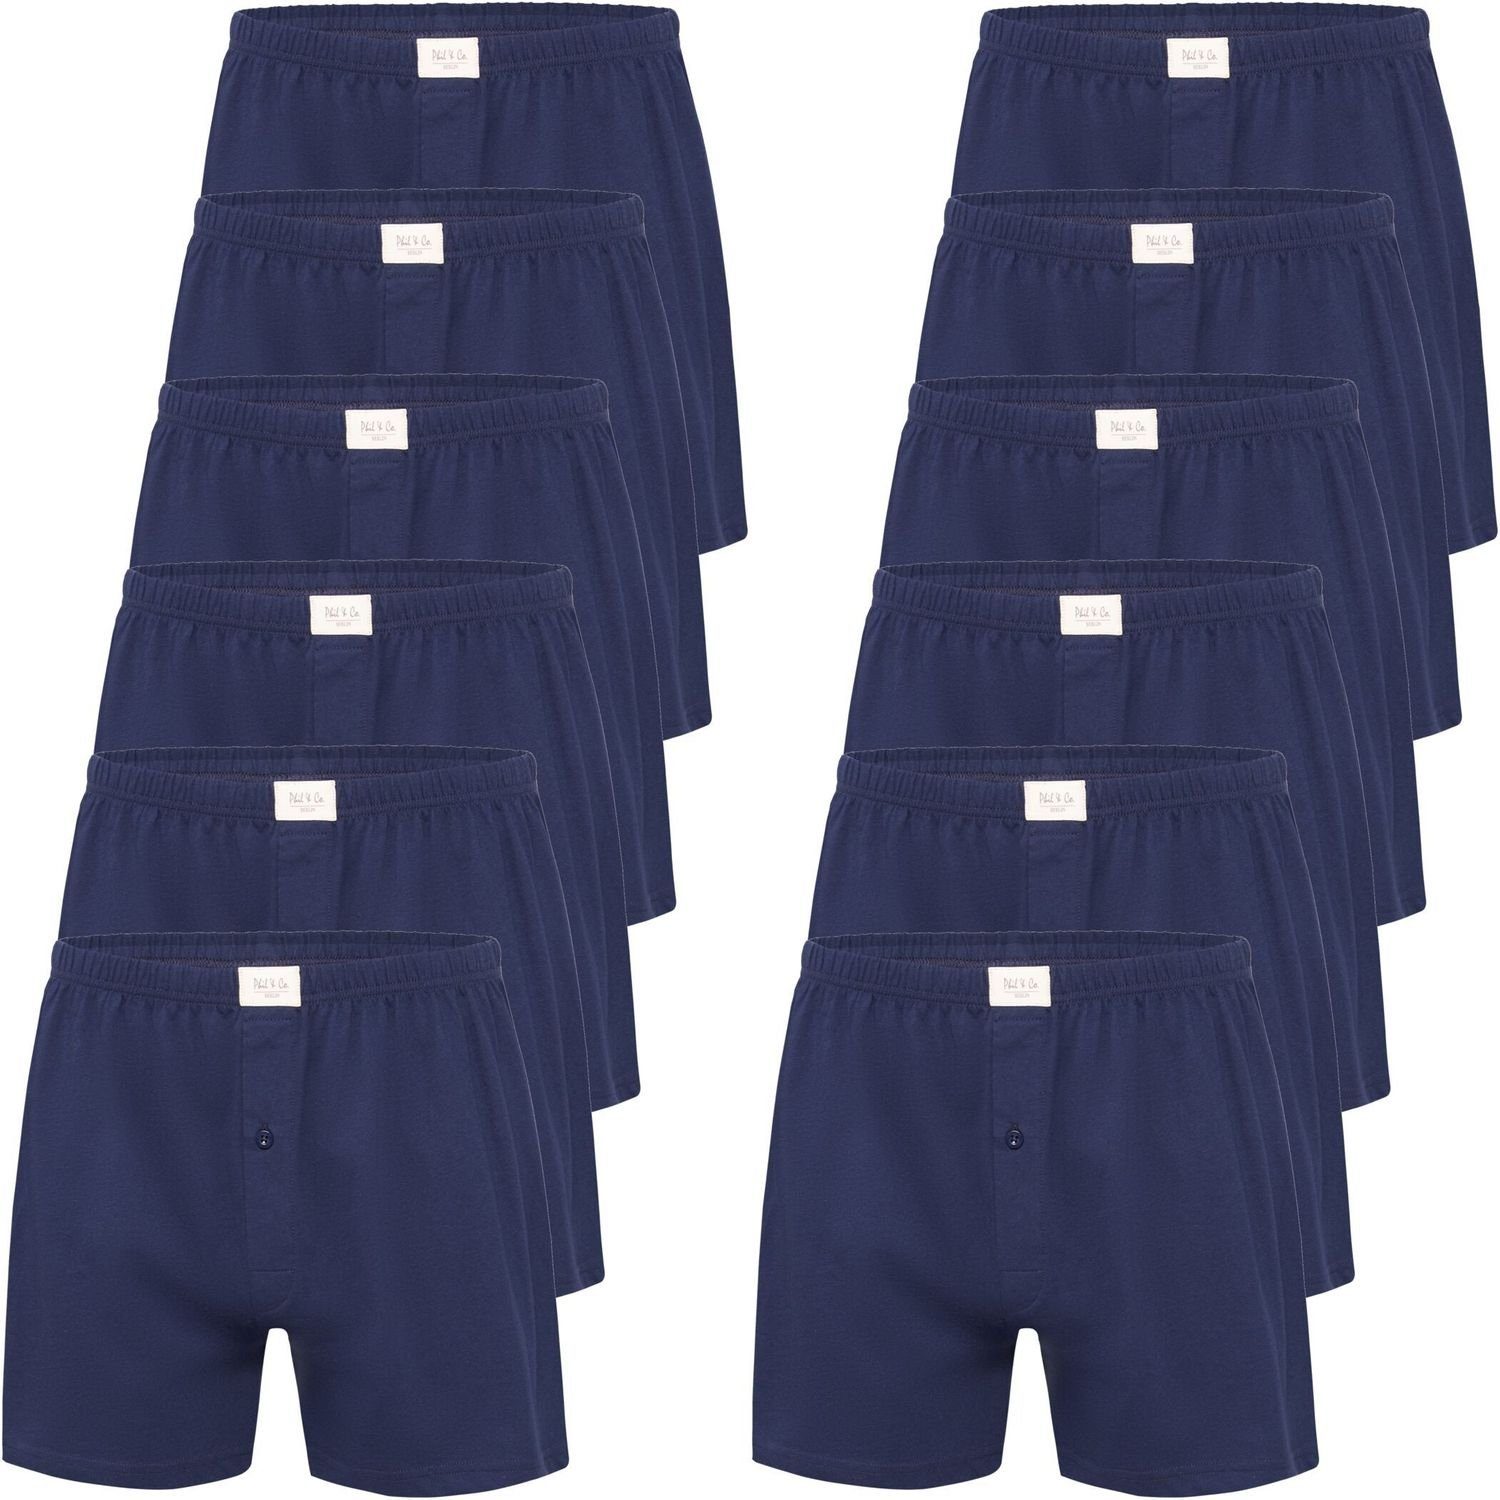 Phil & Co. Boxershorts 12 Stück Phil & Co Jersey Shorts Boxershorts Pant Unterhosen Herren große Größen schwarz oder blau M - 5XL (12-St) marine